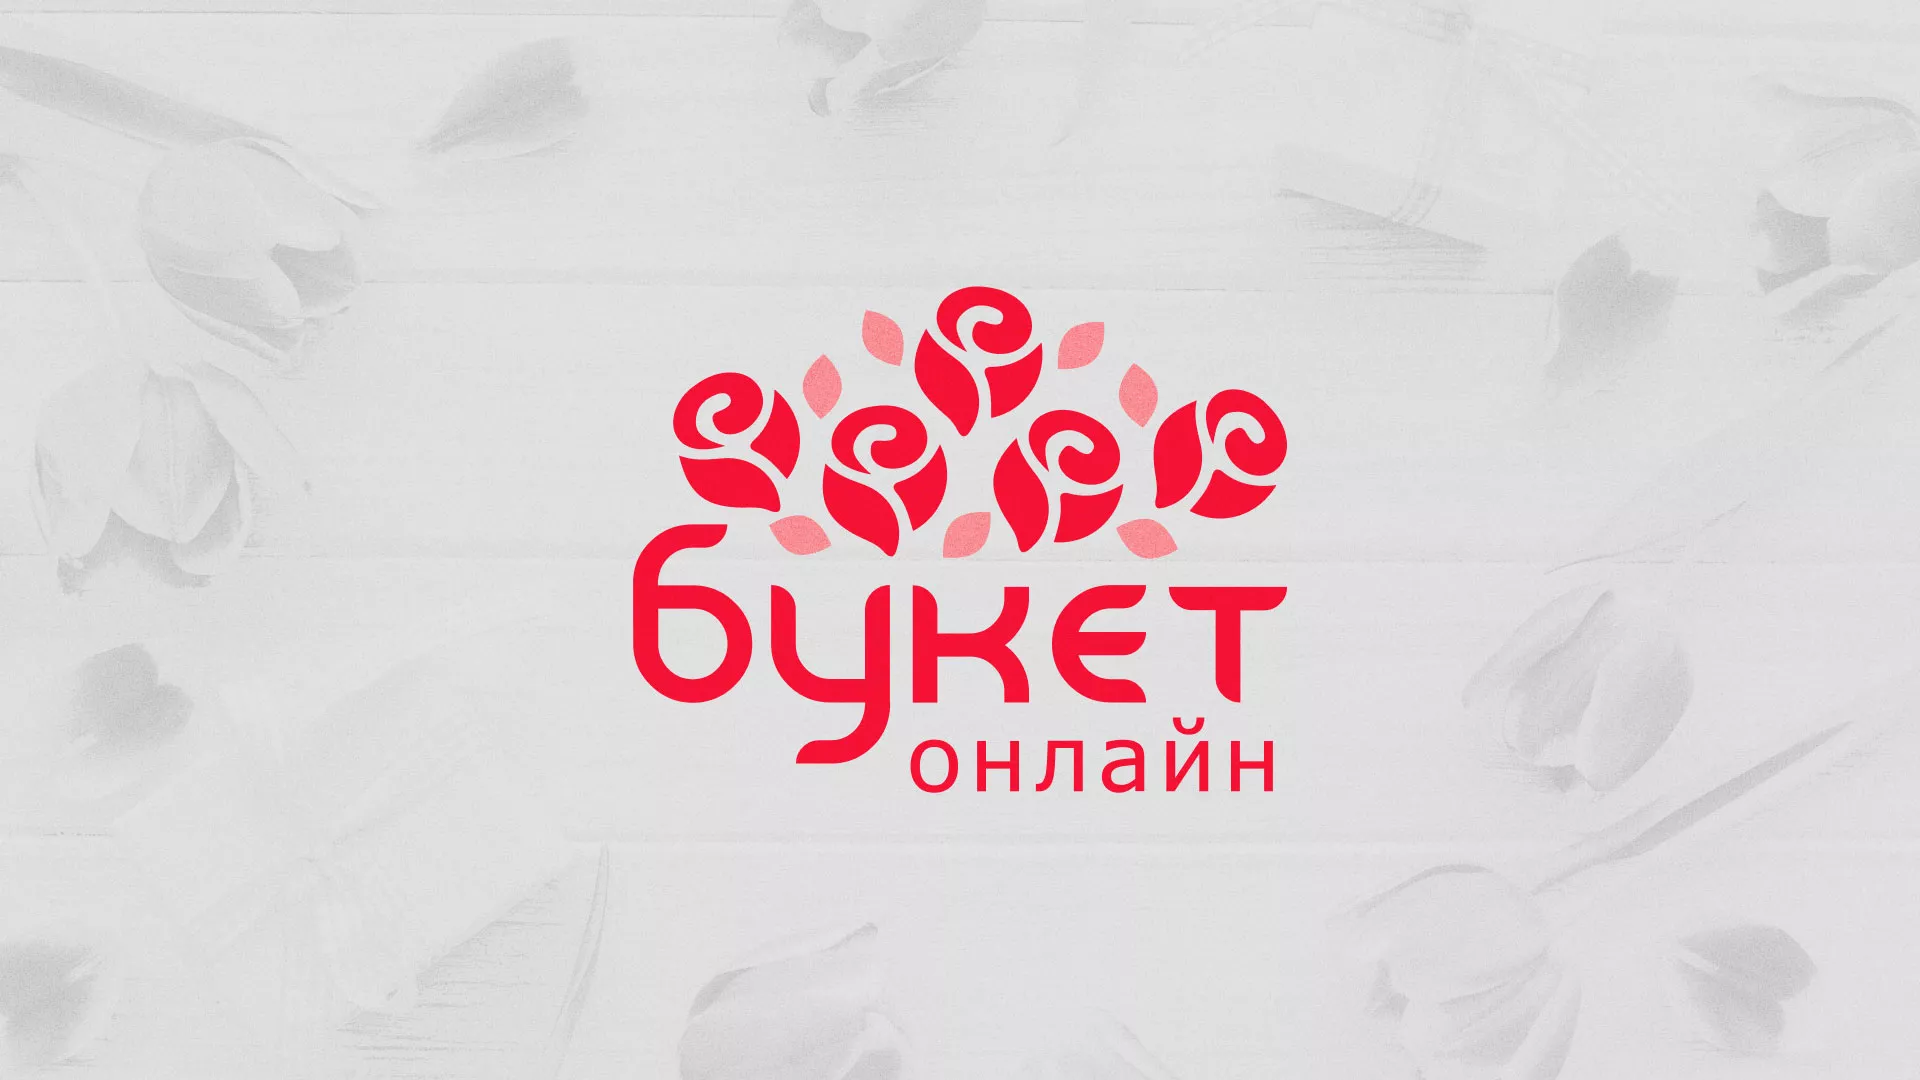 Создание интернет-магазина «Букет-онлайн» по цветам в Далматово